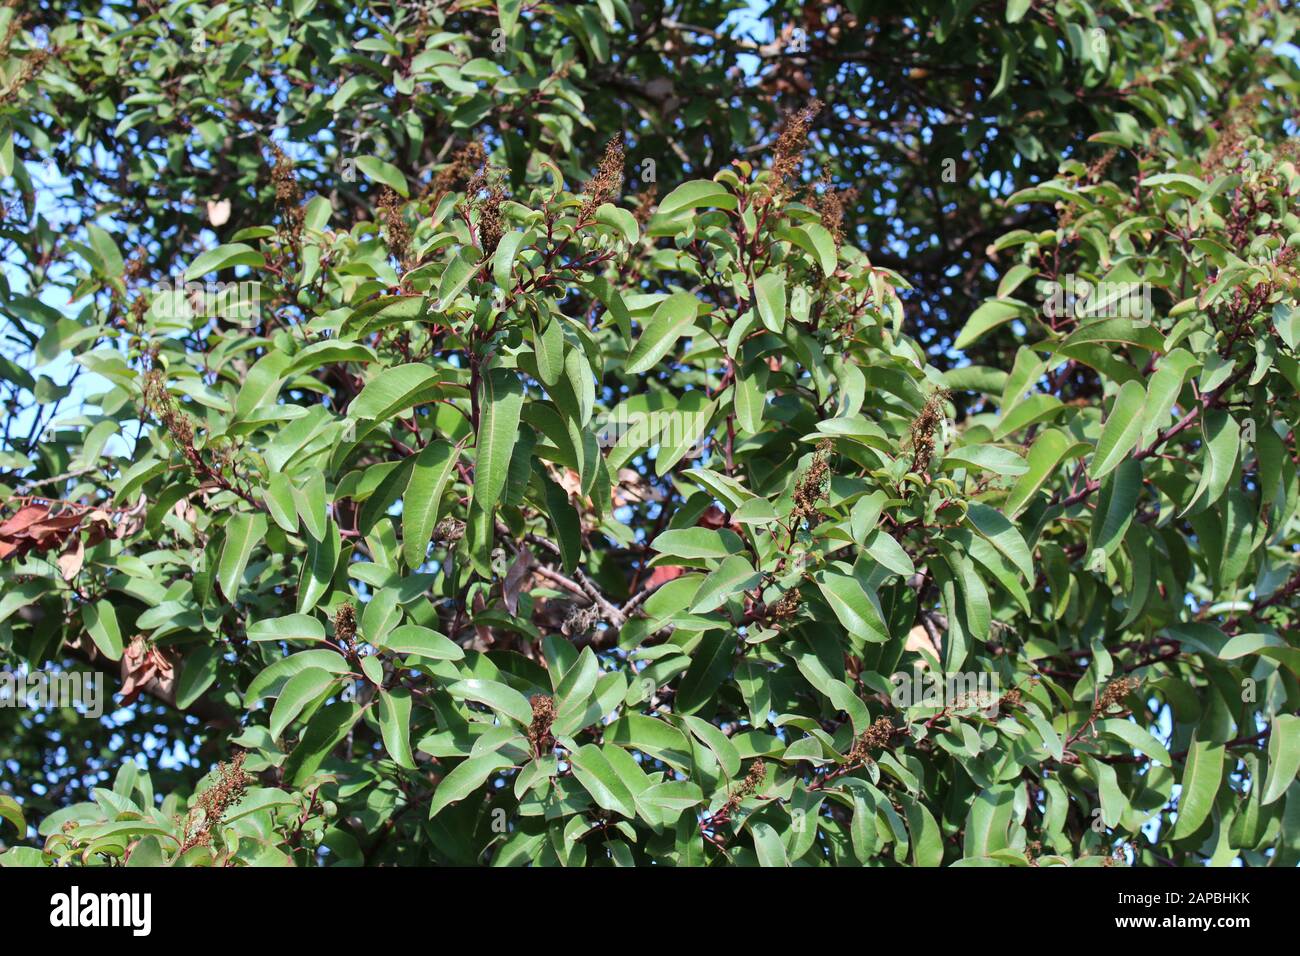 Die roten und gebogenen Blattstiele mit einer Mittelfalte sind Merkmale von Laurel Sumac, Malosma Laurina, der einheimischen Pflanze der Santa Monica Mountains. Stockfoto